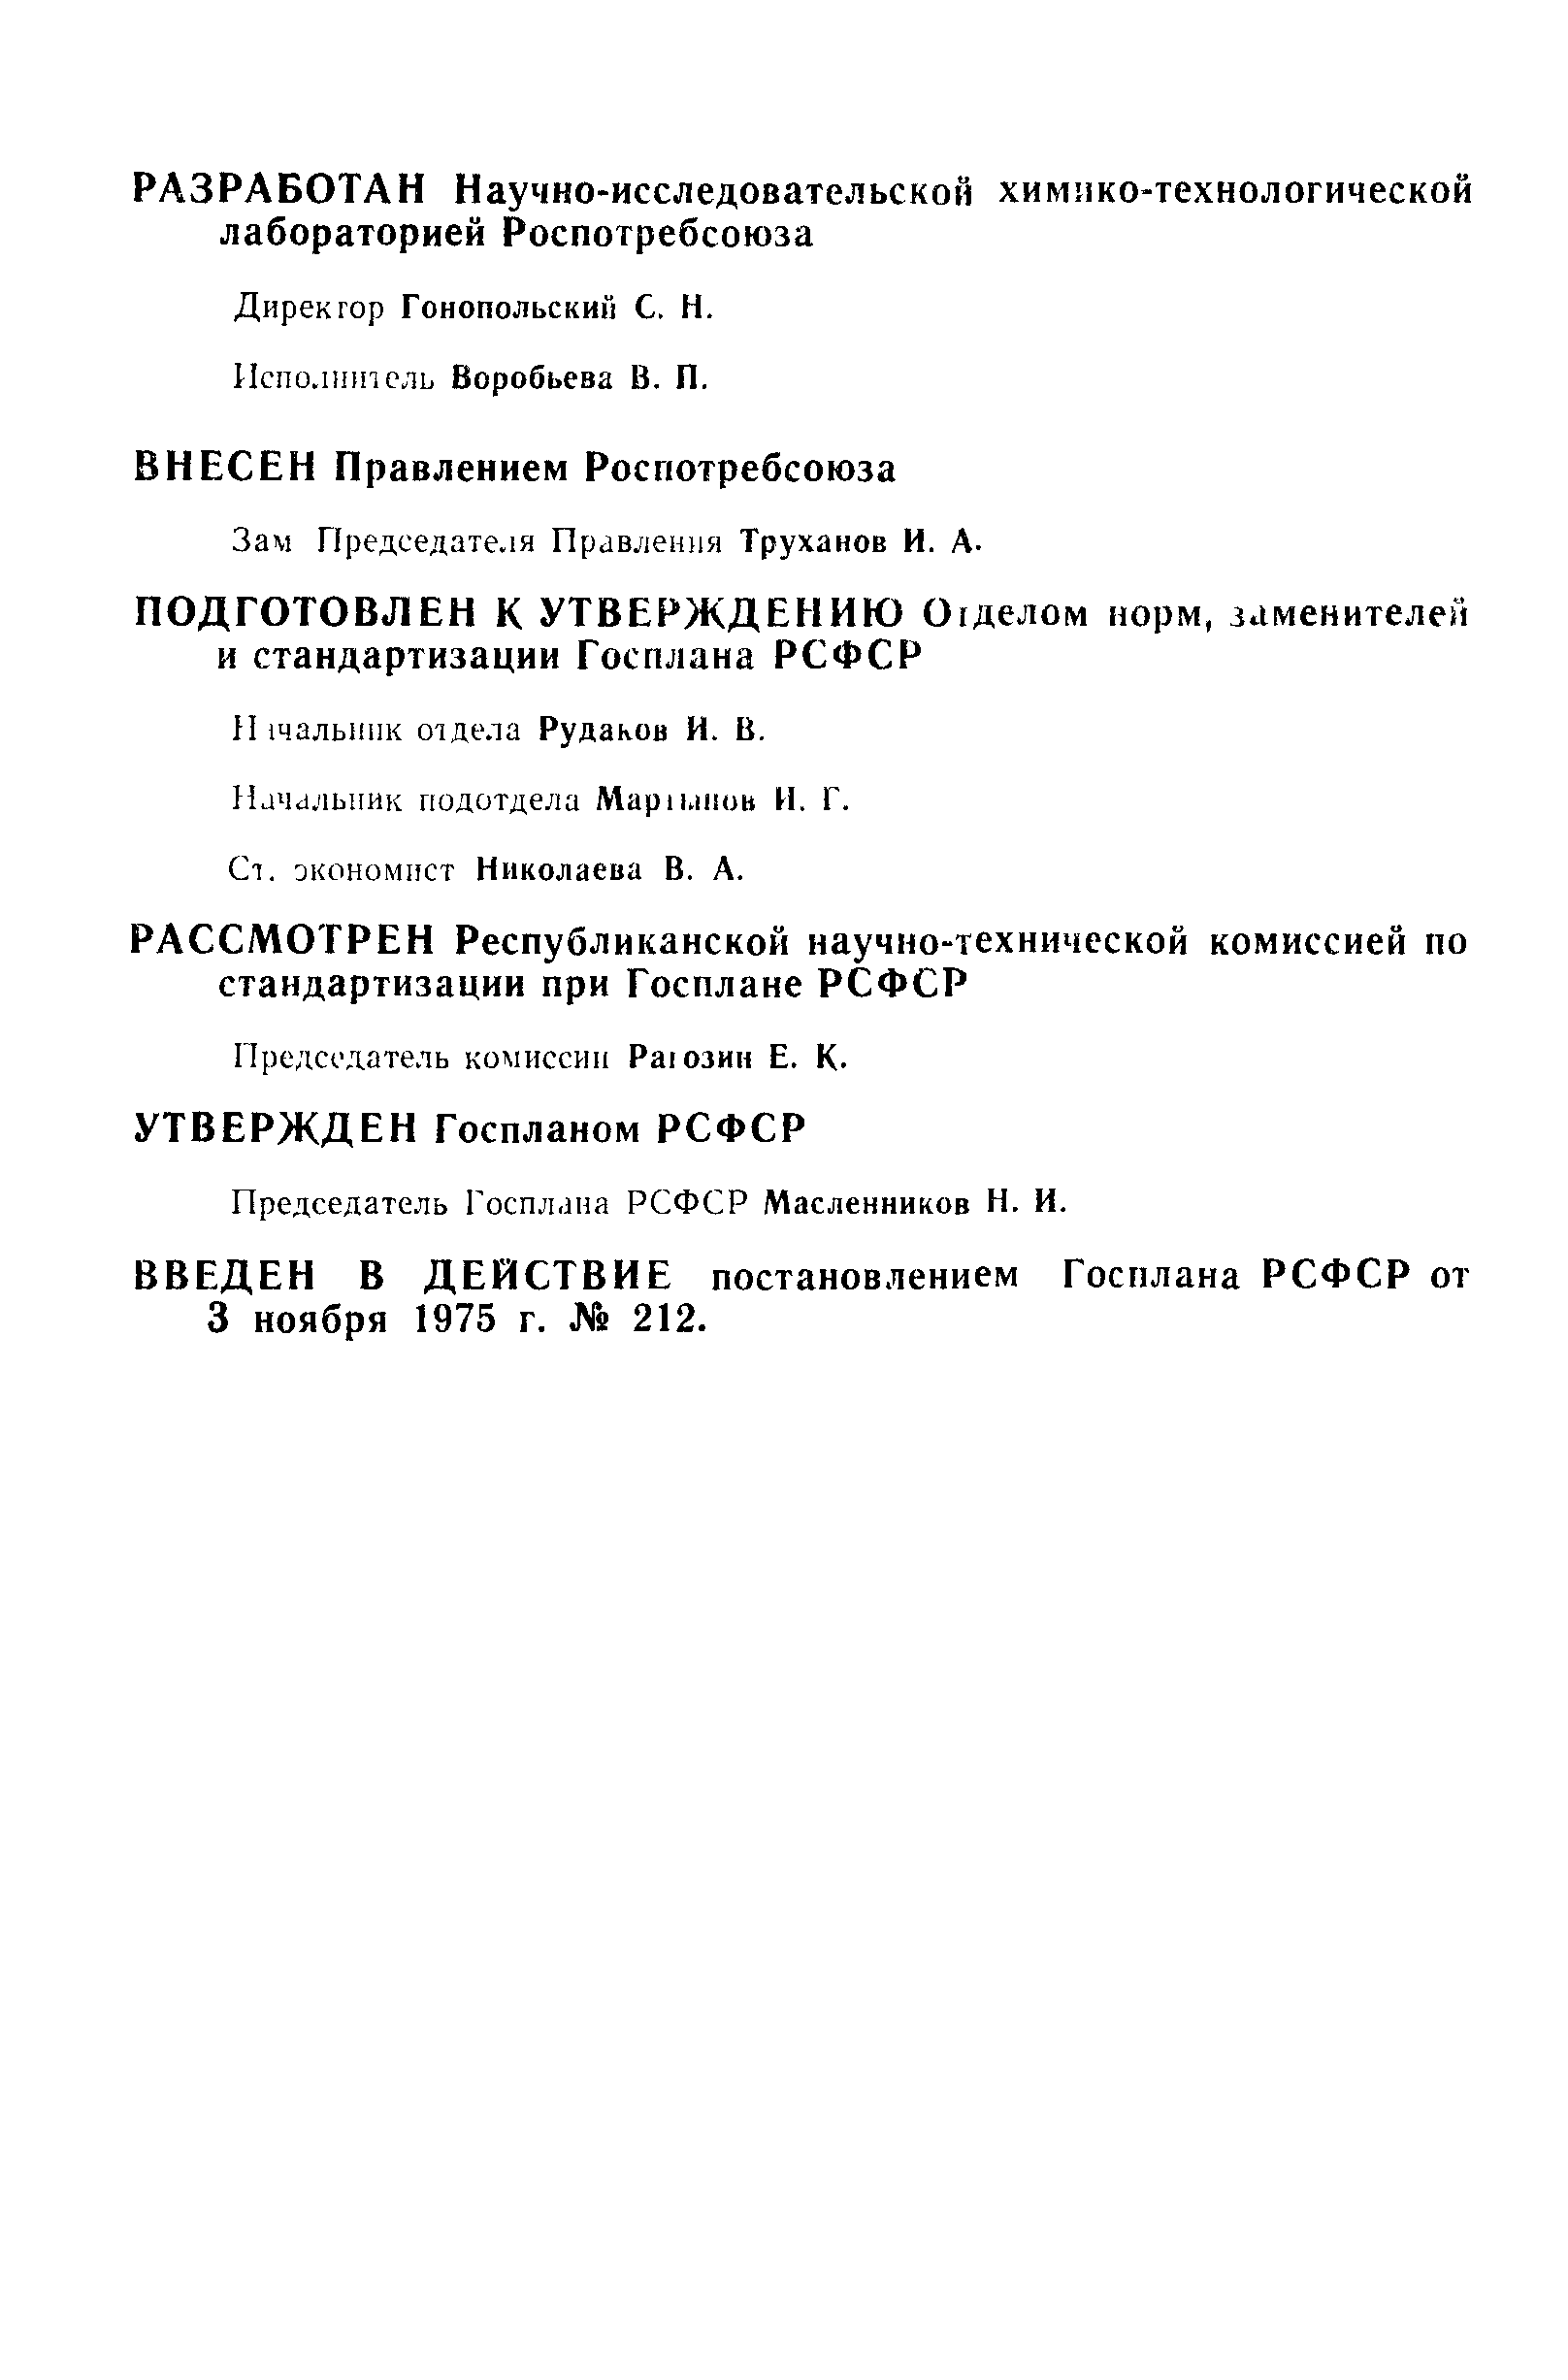 РСТ РСФСР 21-75